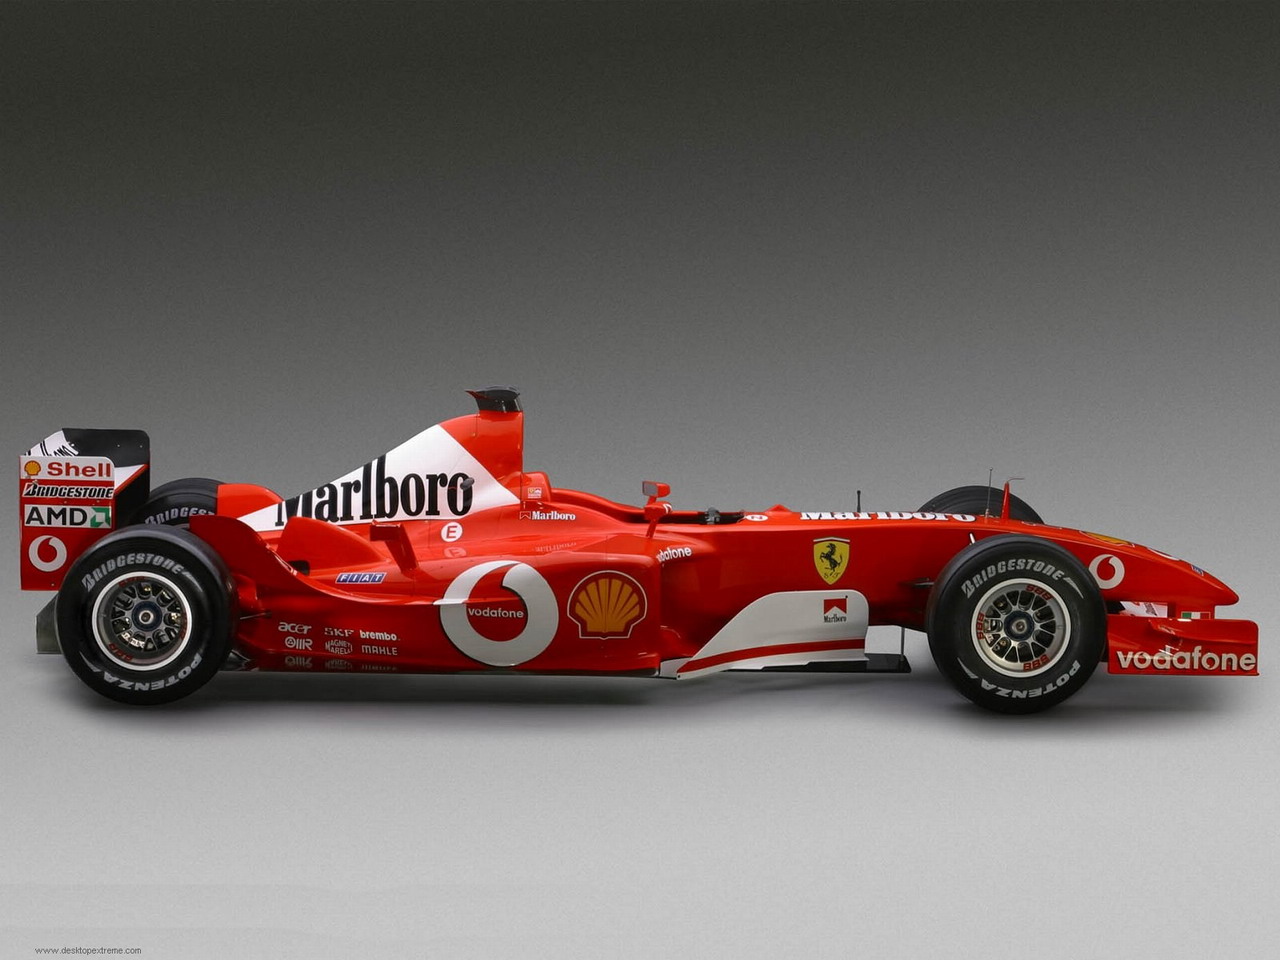 Design New Ferrari Cars Accessories And Interiors